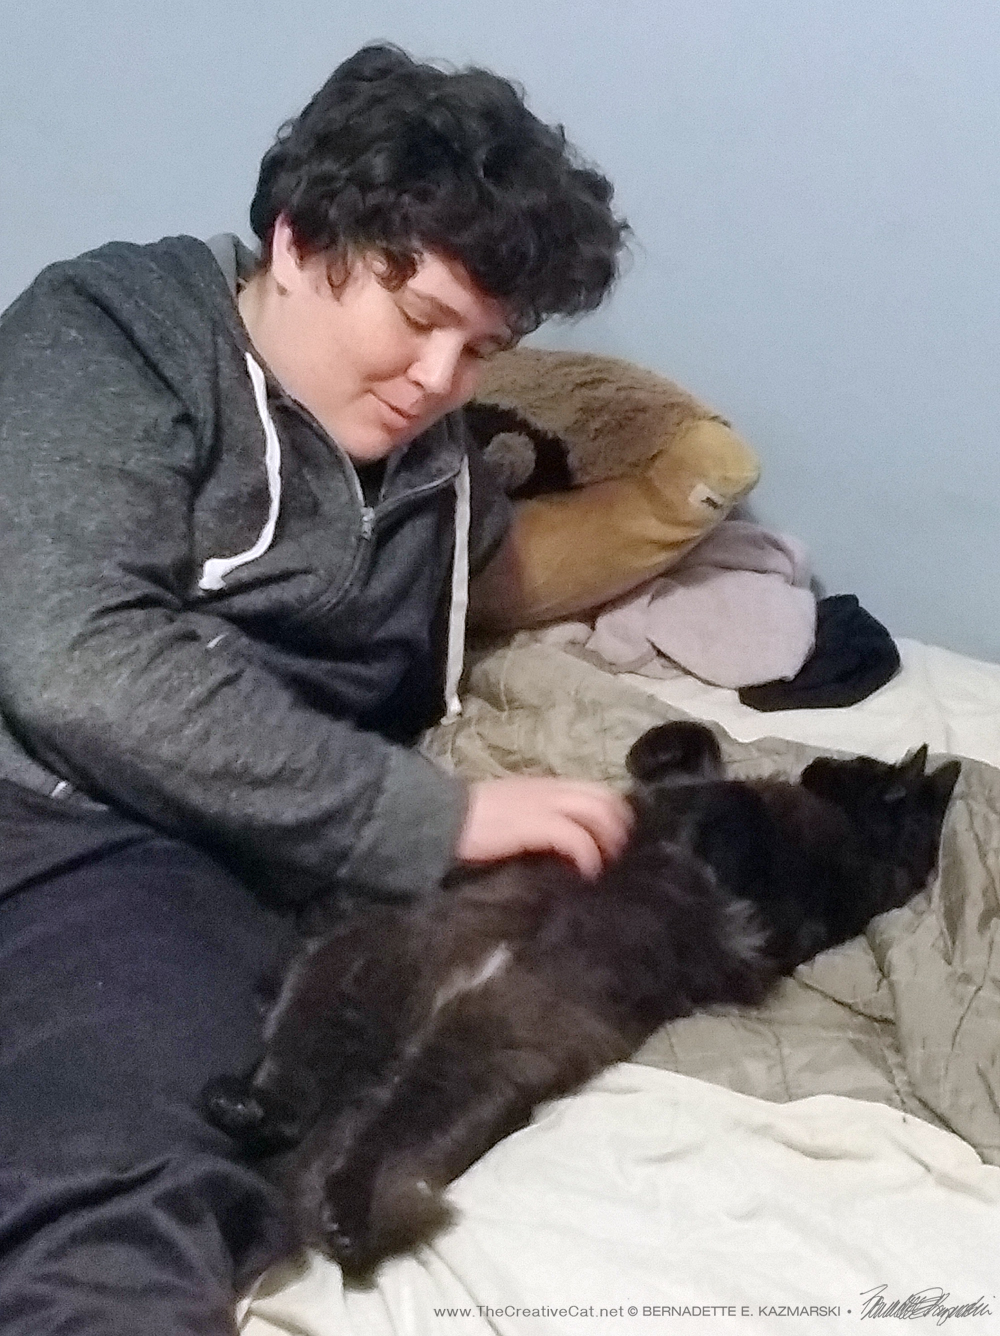 Kyler gives Simon a belly rub.